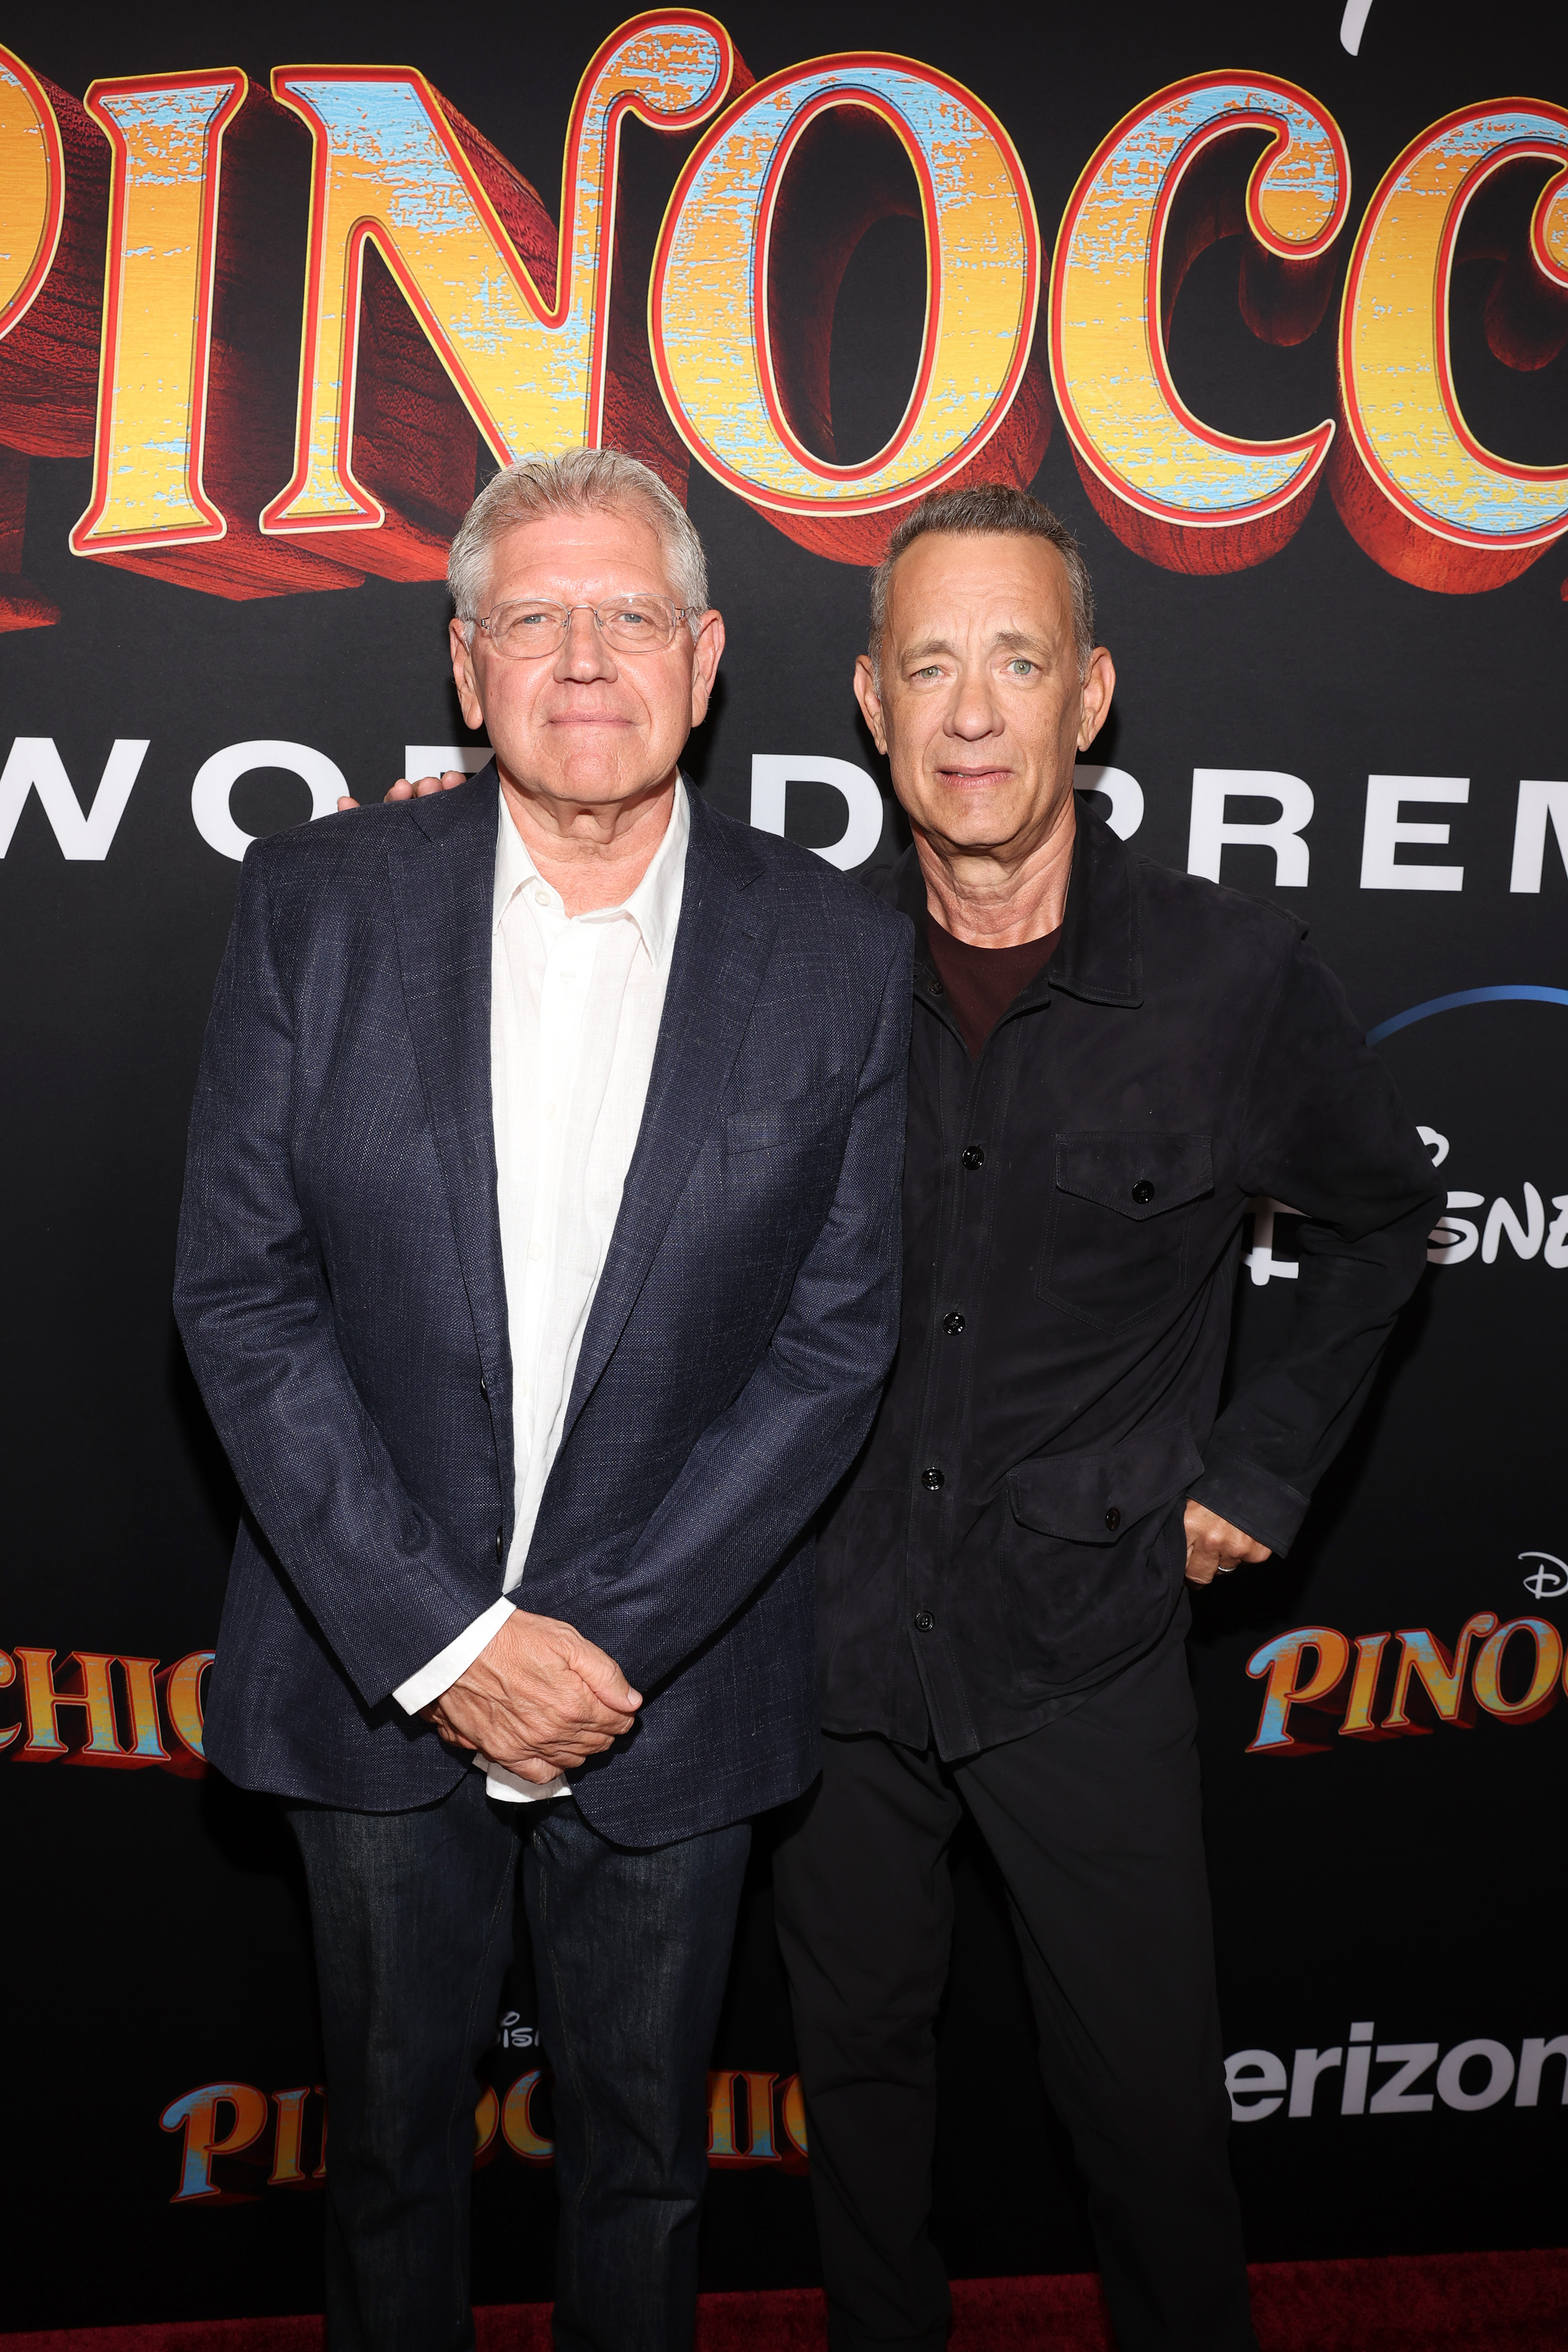 Robert Zemeckis und Tom Hanks bei der Weltpremiere von "Pinocchio" in Burbank, Kalifornien, am 7. September 2022. | Quelle: Getty Images